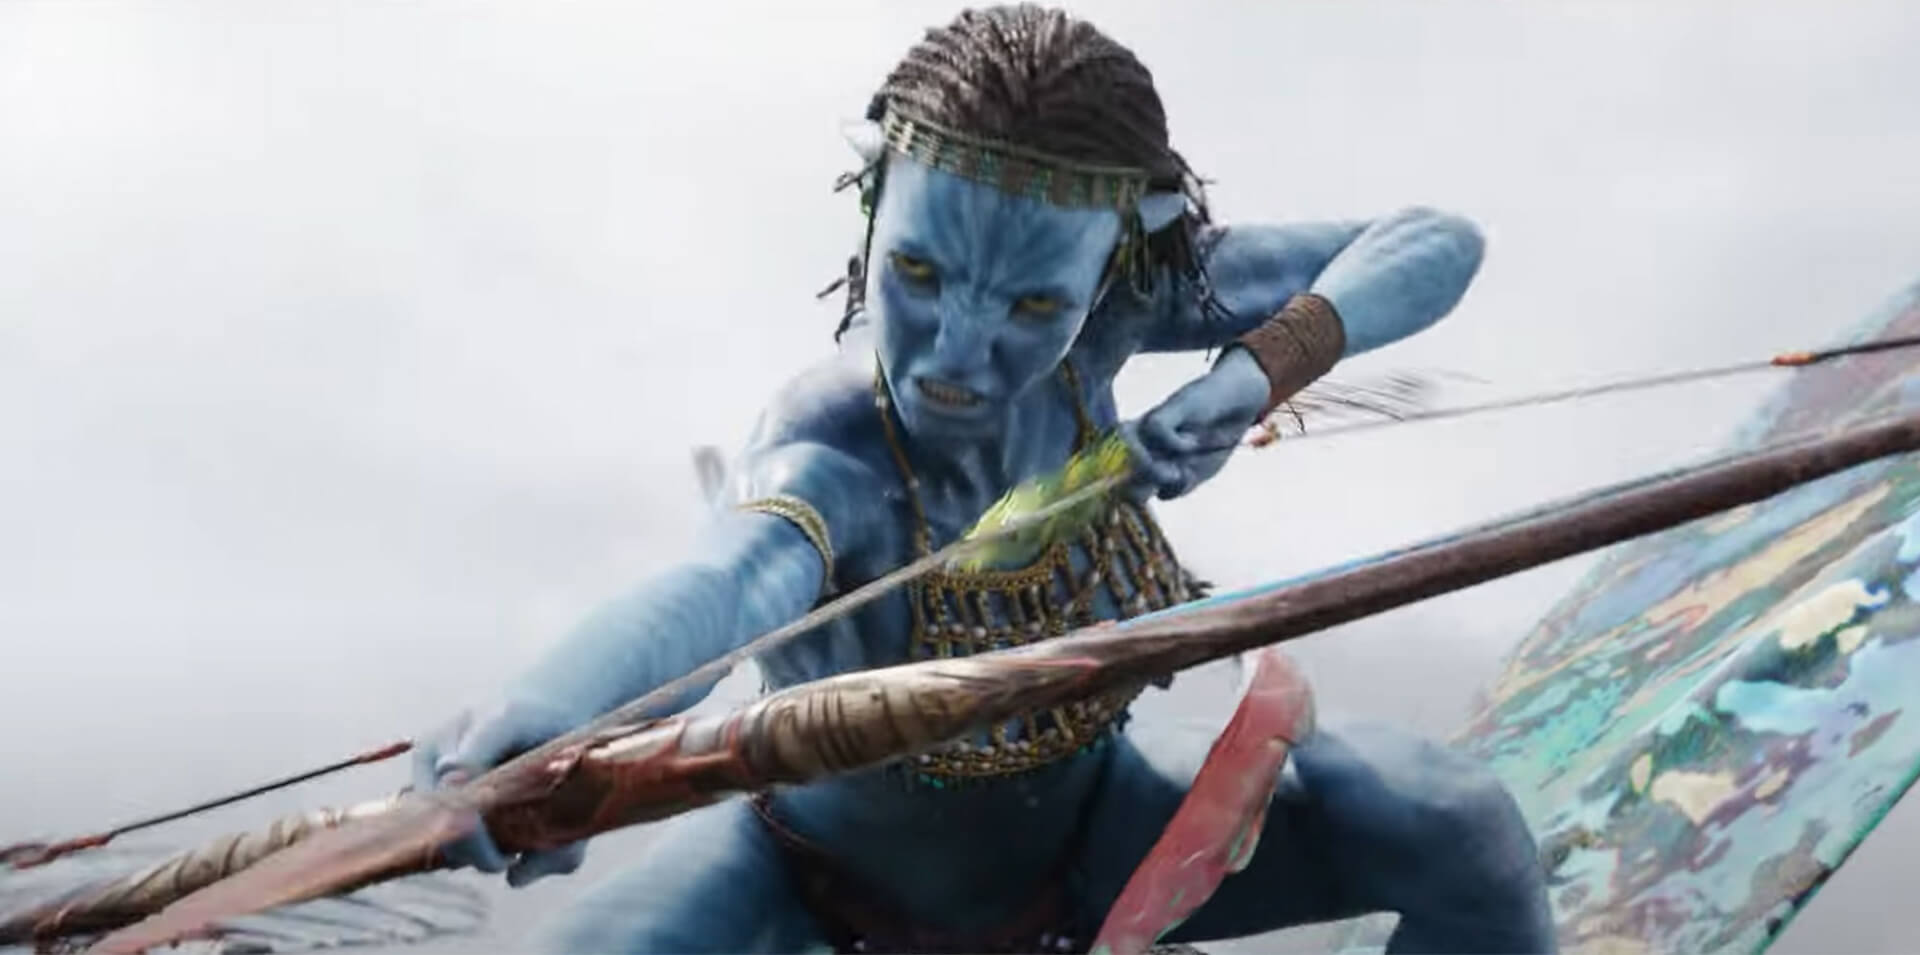 Az Avatar: A víz útja “kurva drága” volt, és James Cameron szerint minden idők 3-4. legtöbb pénzt termelő mozifilmjének kell lennie ahhoz, hogy sikeres legyen